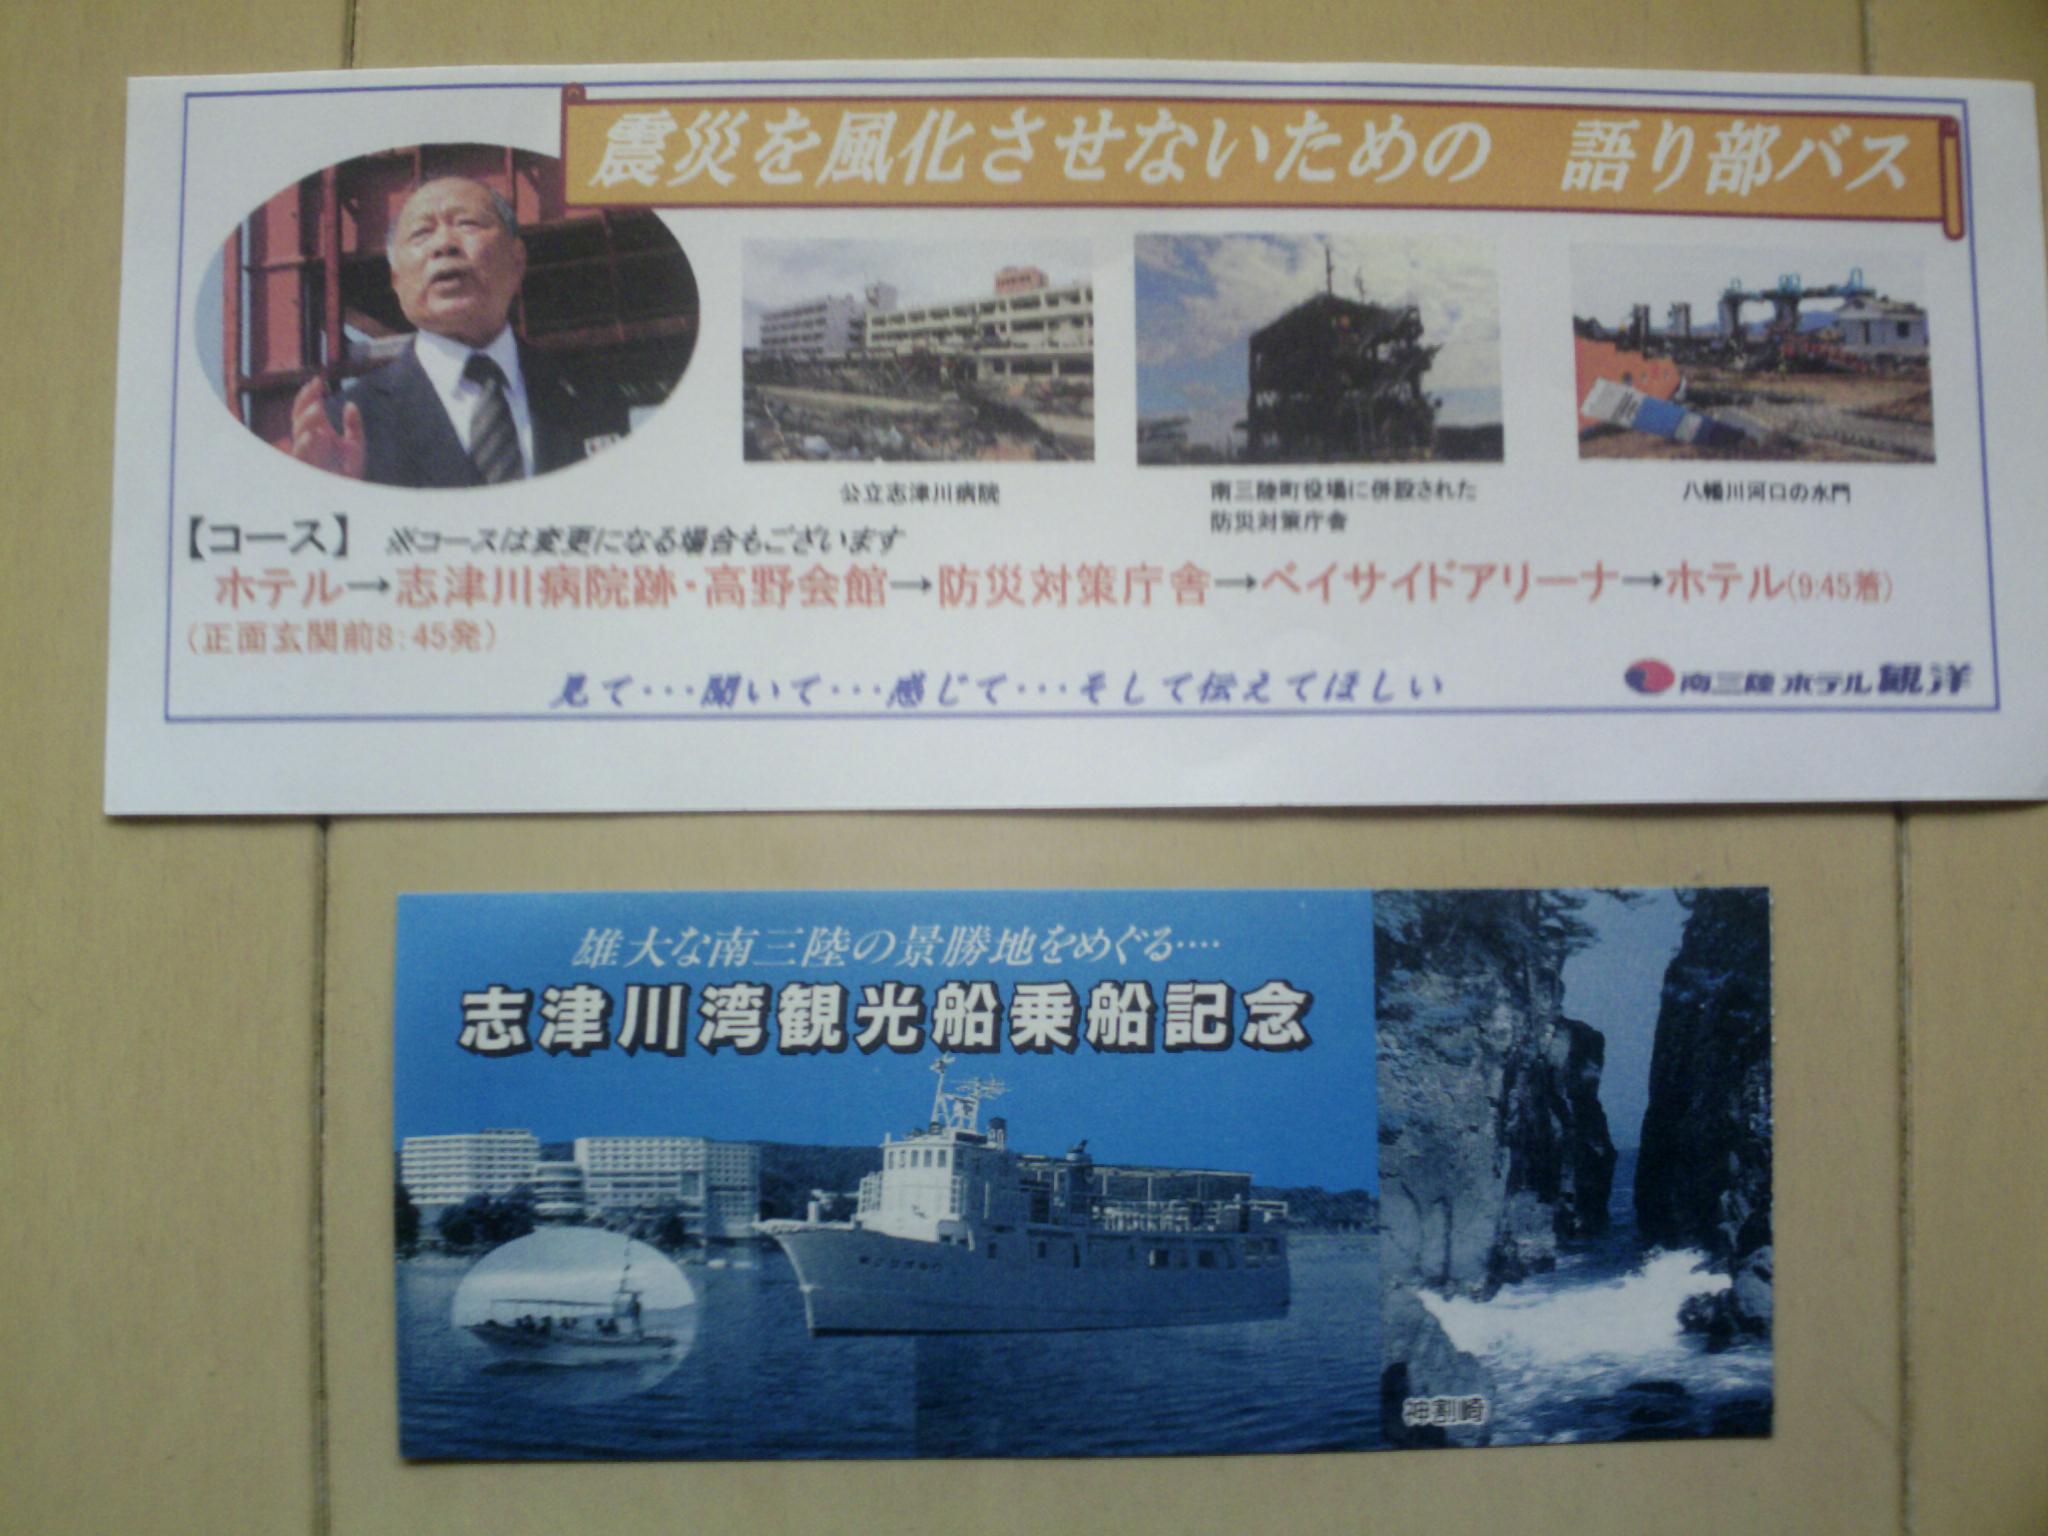 語り部バス＆志津川湾観光船 チケット